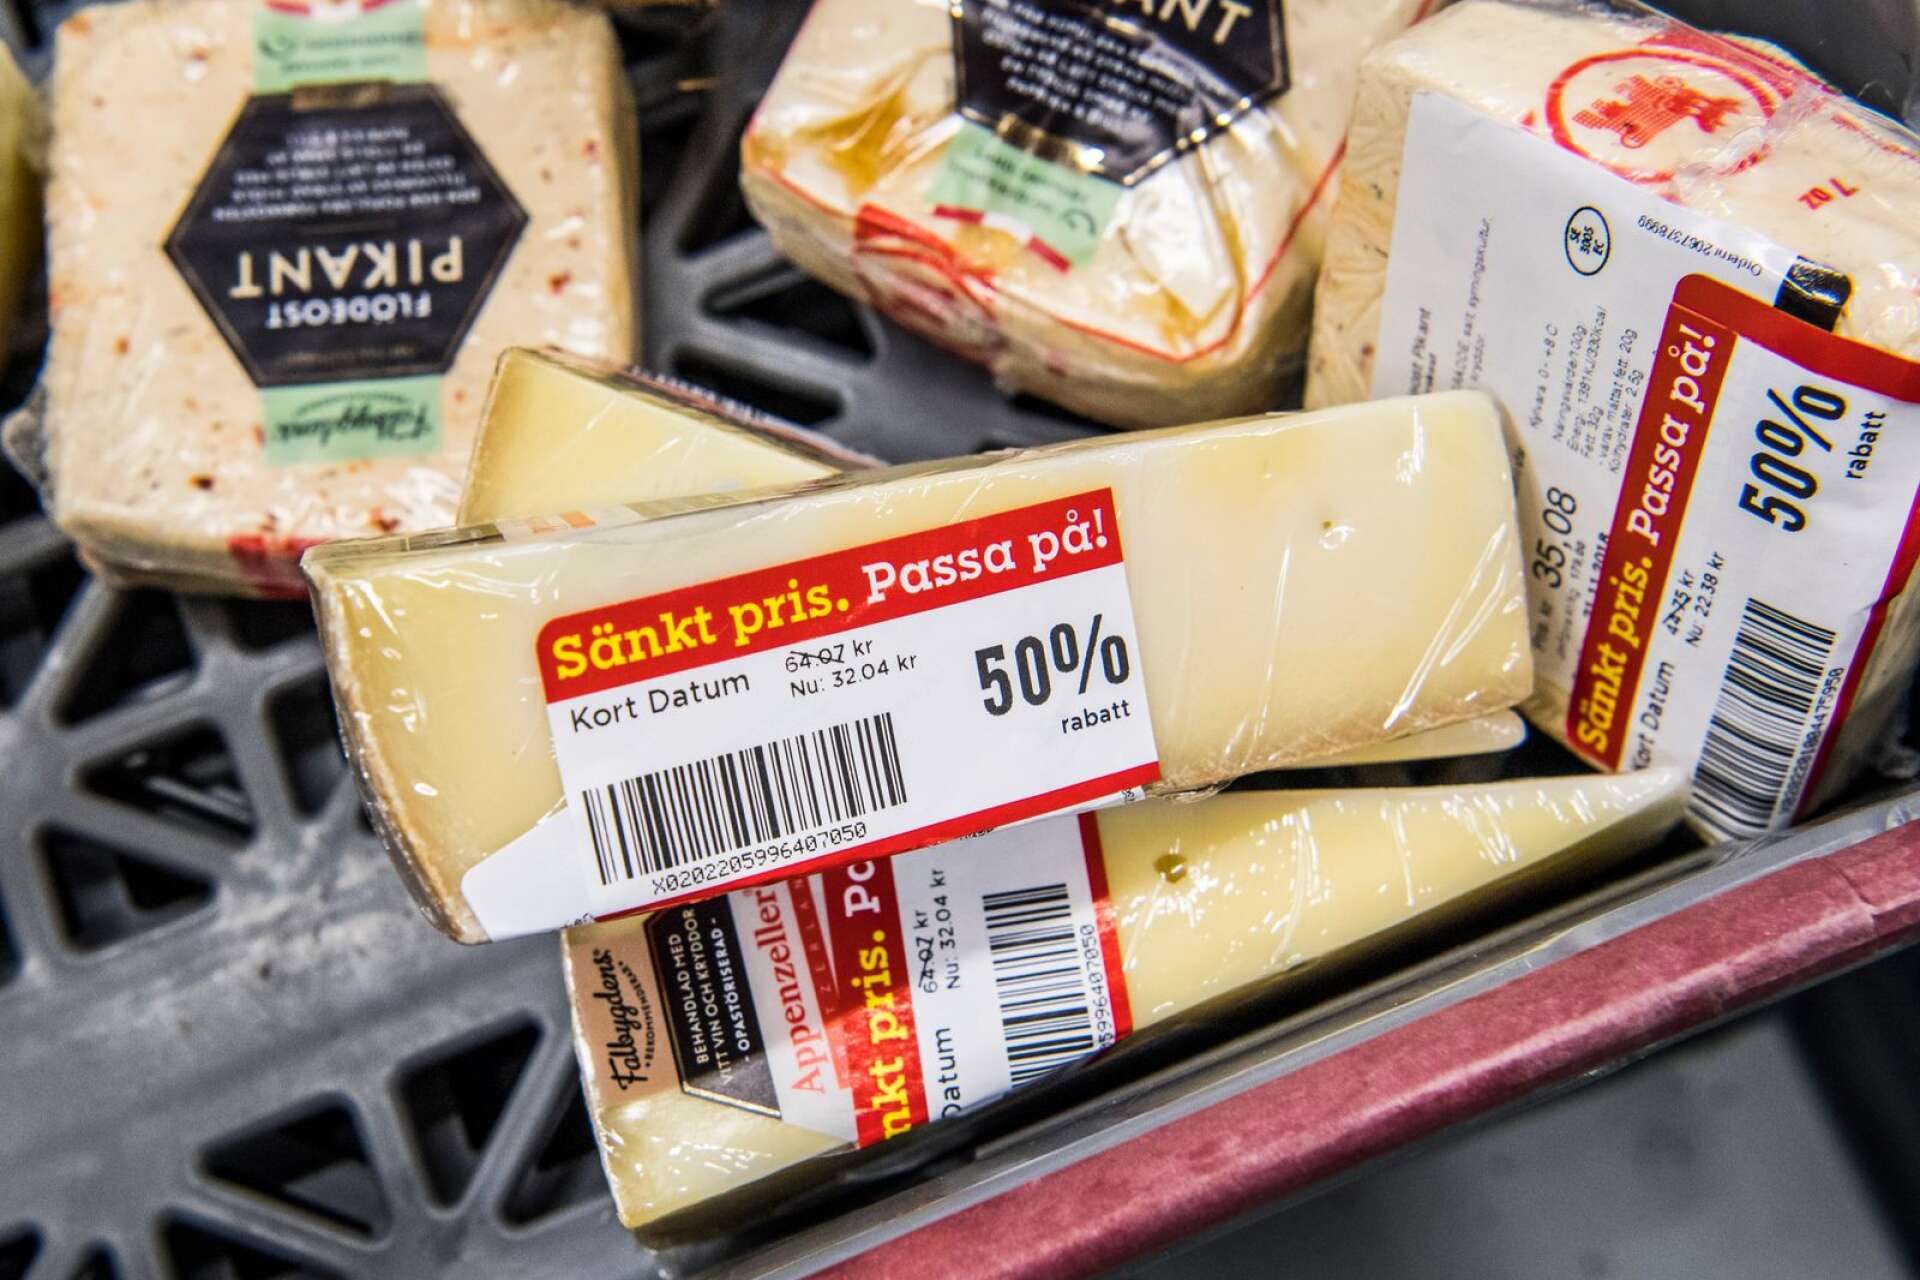 ”Jag tycker det är fantastiskt roligt när jag går i butiken och köper ost som har nedsatt pris för att det är kort datum. Samtidigt ligger längre lagrad ost bredvid som kostar mycket mer”, skrattar Fredrik Wikström.